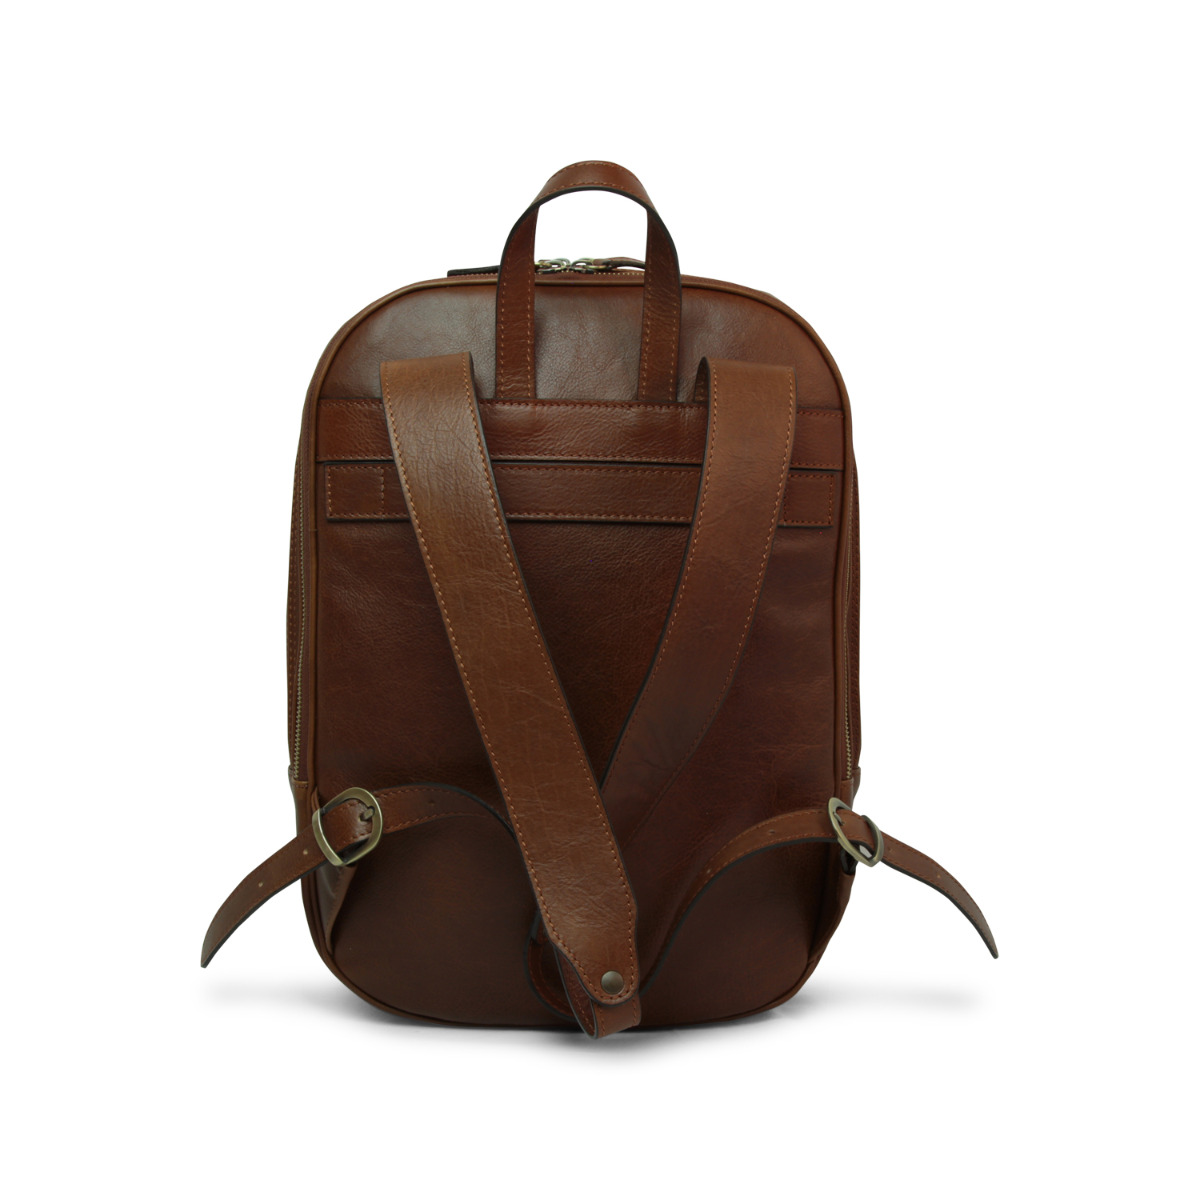 Full grain leather backpack - chestnut|031461CA|Old Angler Firenze